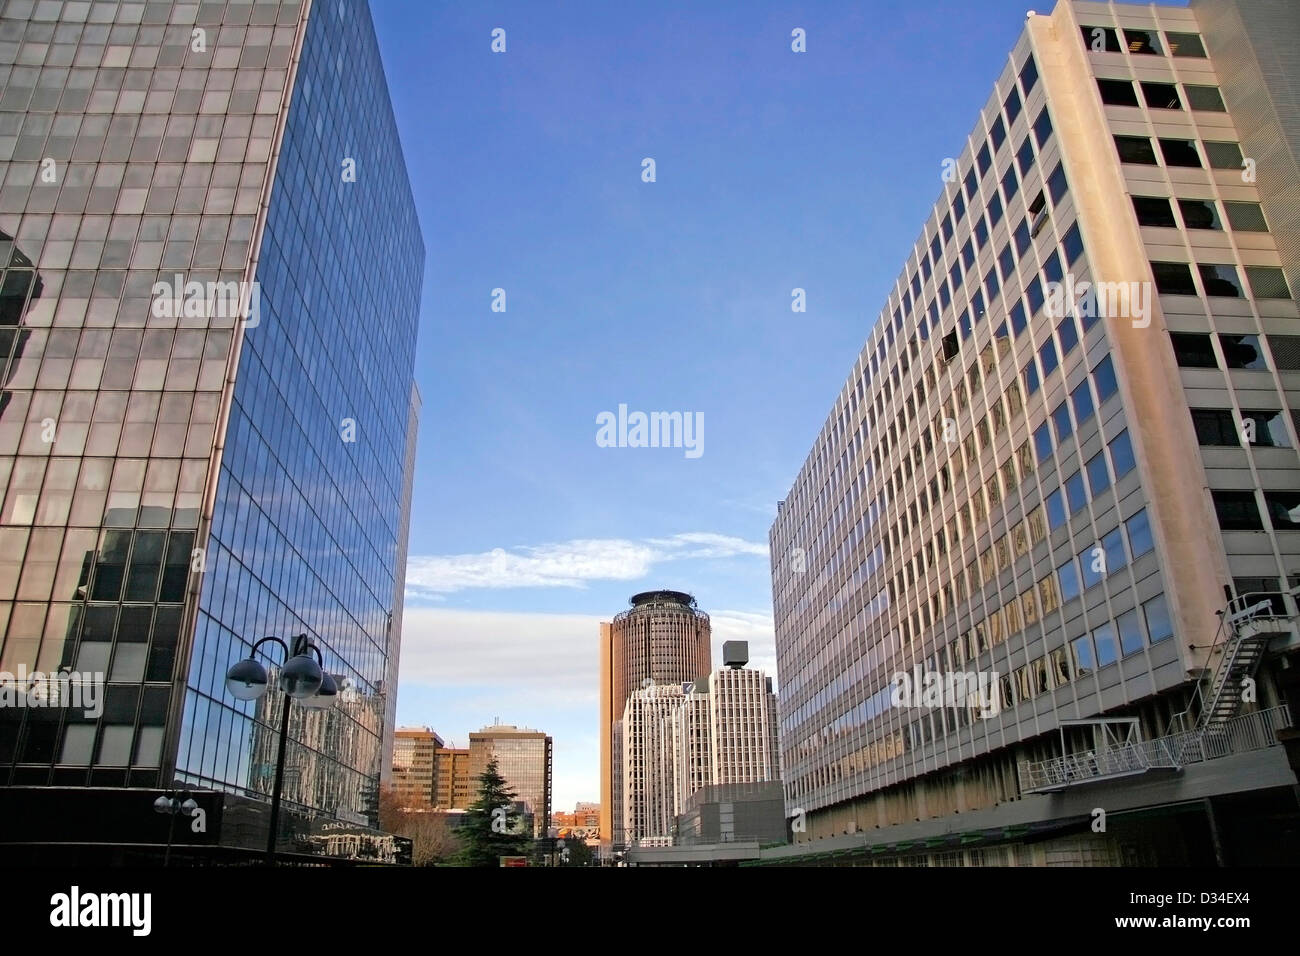 La perspective et l'angle de vue de dessous de verre fond texturé moderne bâtiment gratte-ciel sur ciel bleu Banque D'Images